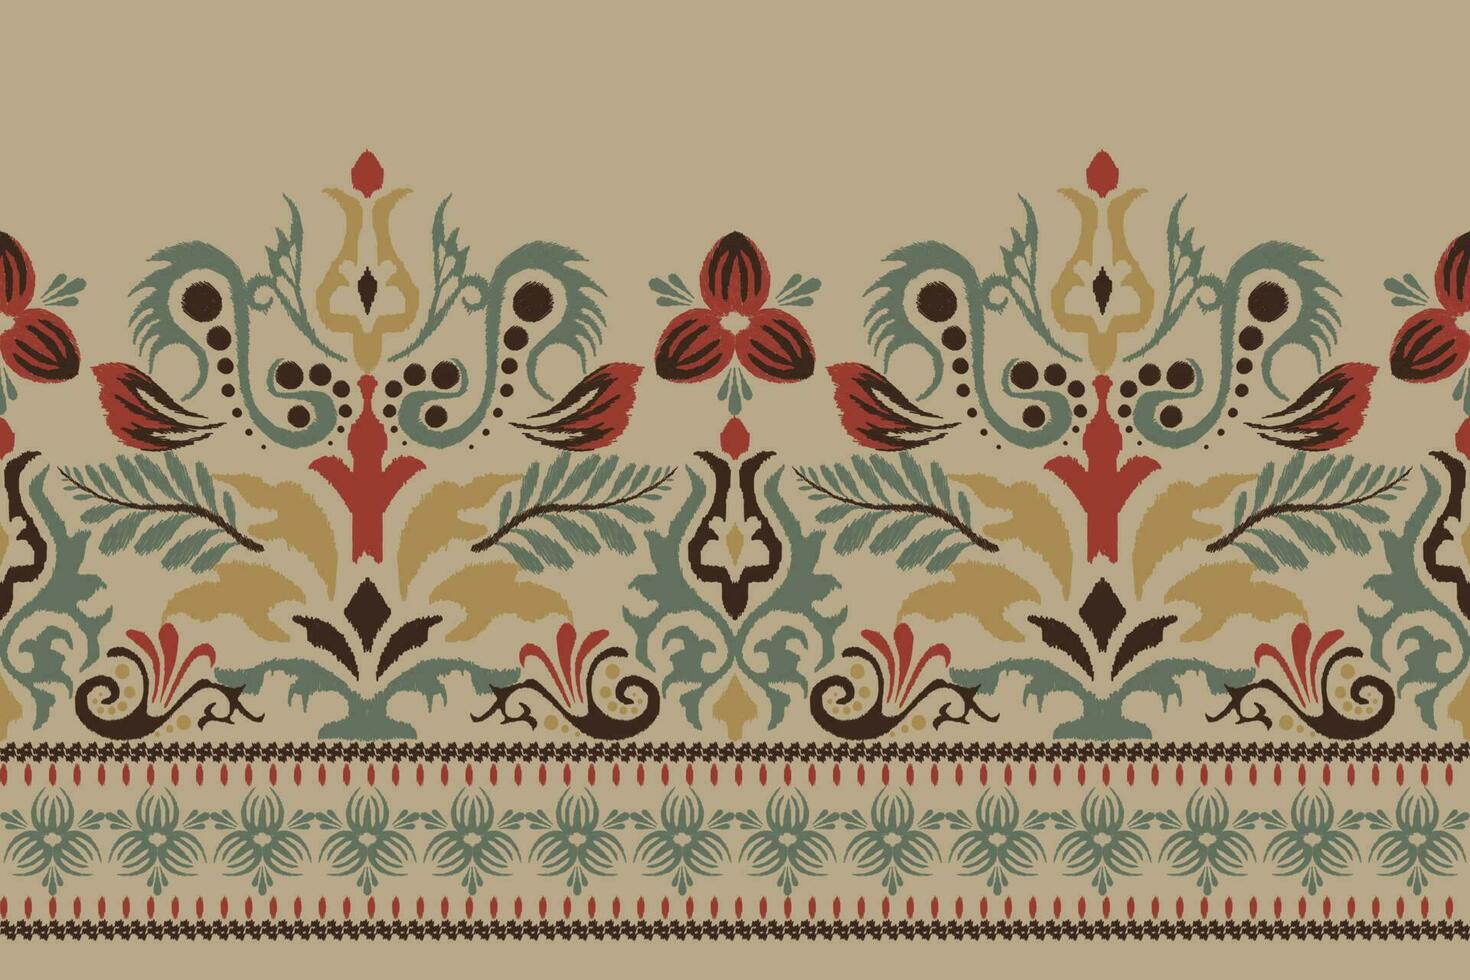 ikat floral paisley broderie sur marron background.ikat ethnique Oriental modèle traditionnel.aztèque style abstrait vecteur illustration.design pour texture, tissu, vêtements, emballage, décoration, sarong, écharpe